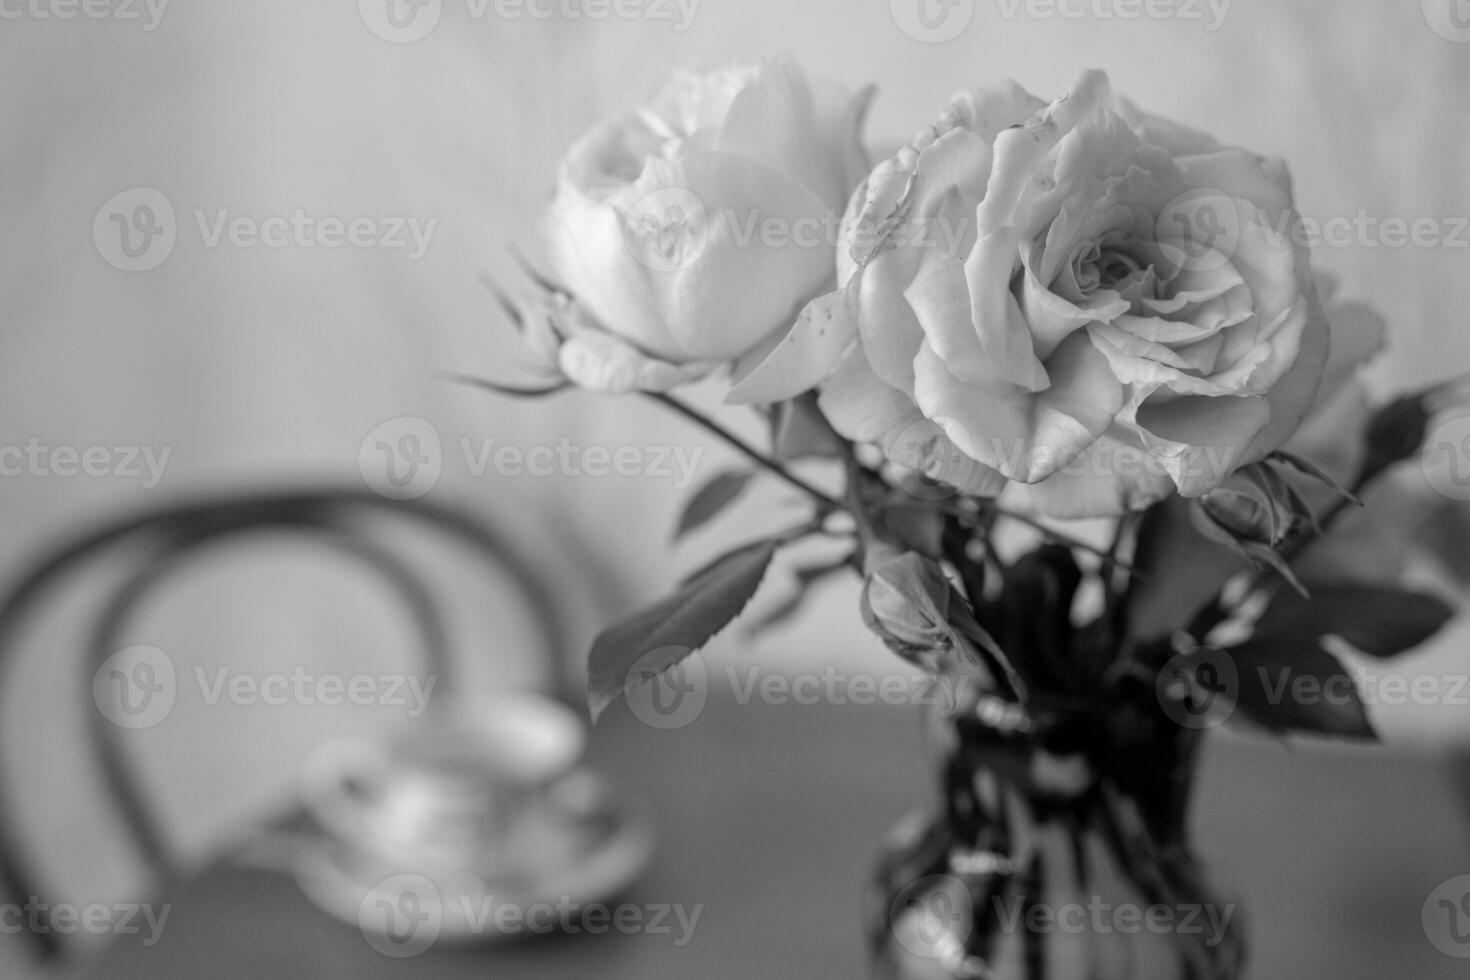 photographie à thème beau bouquet de roses dans un vase sur table en bois photo